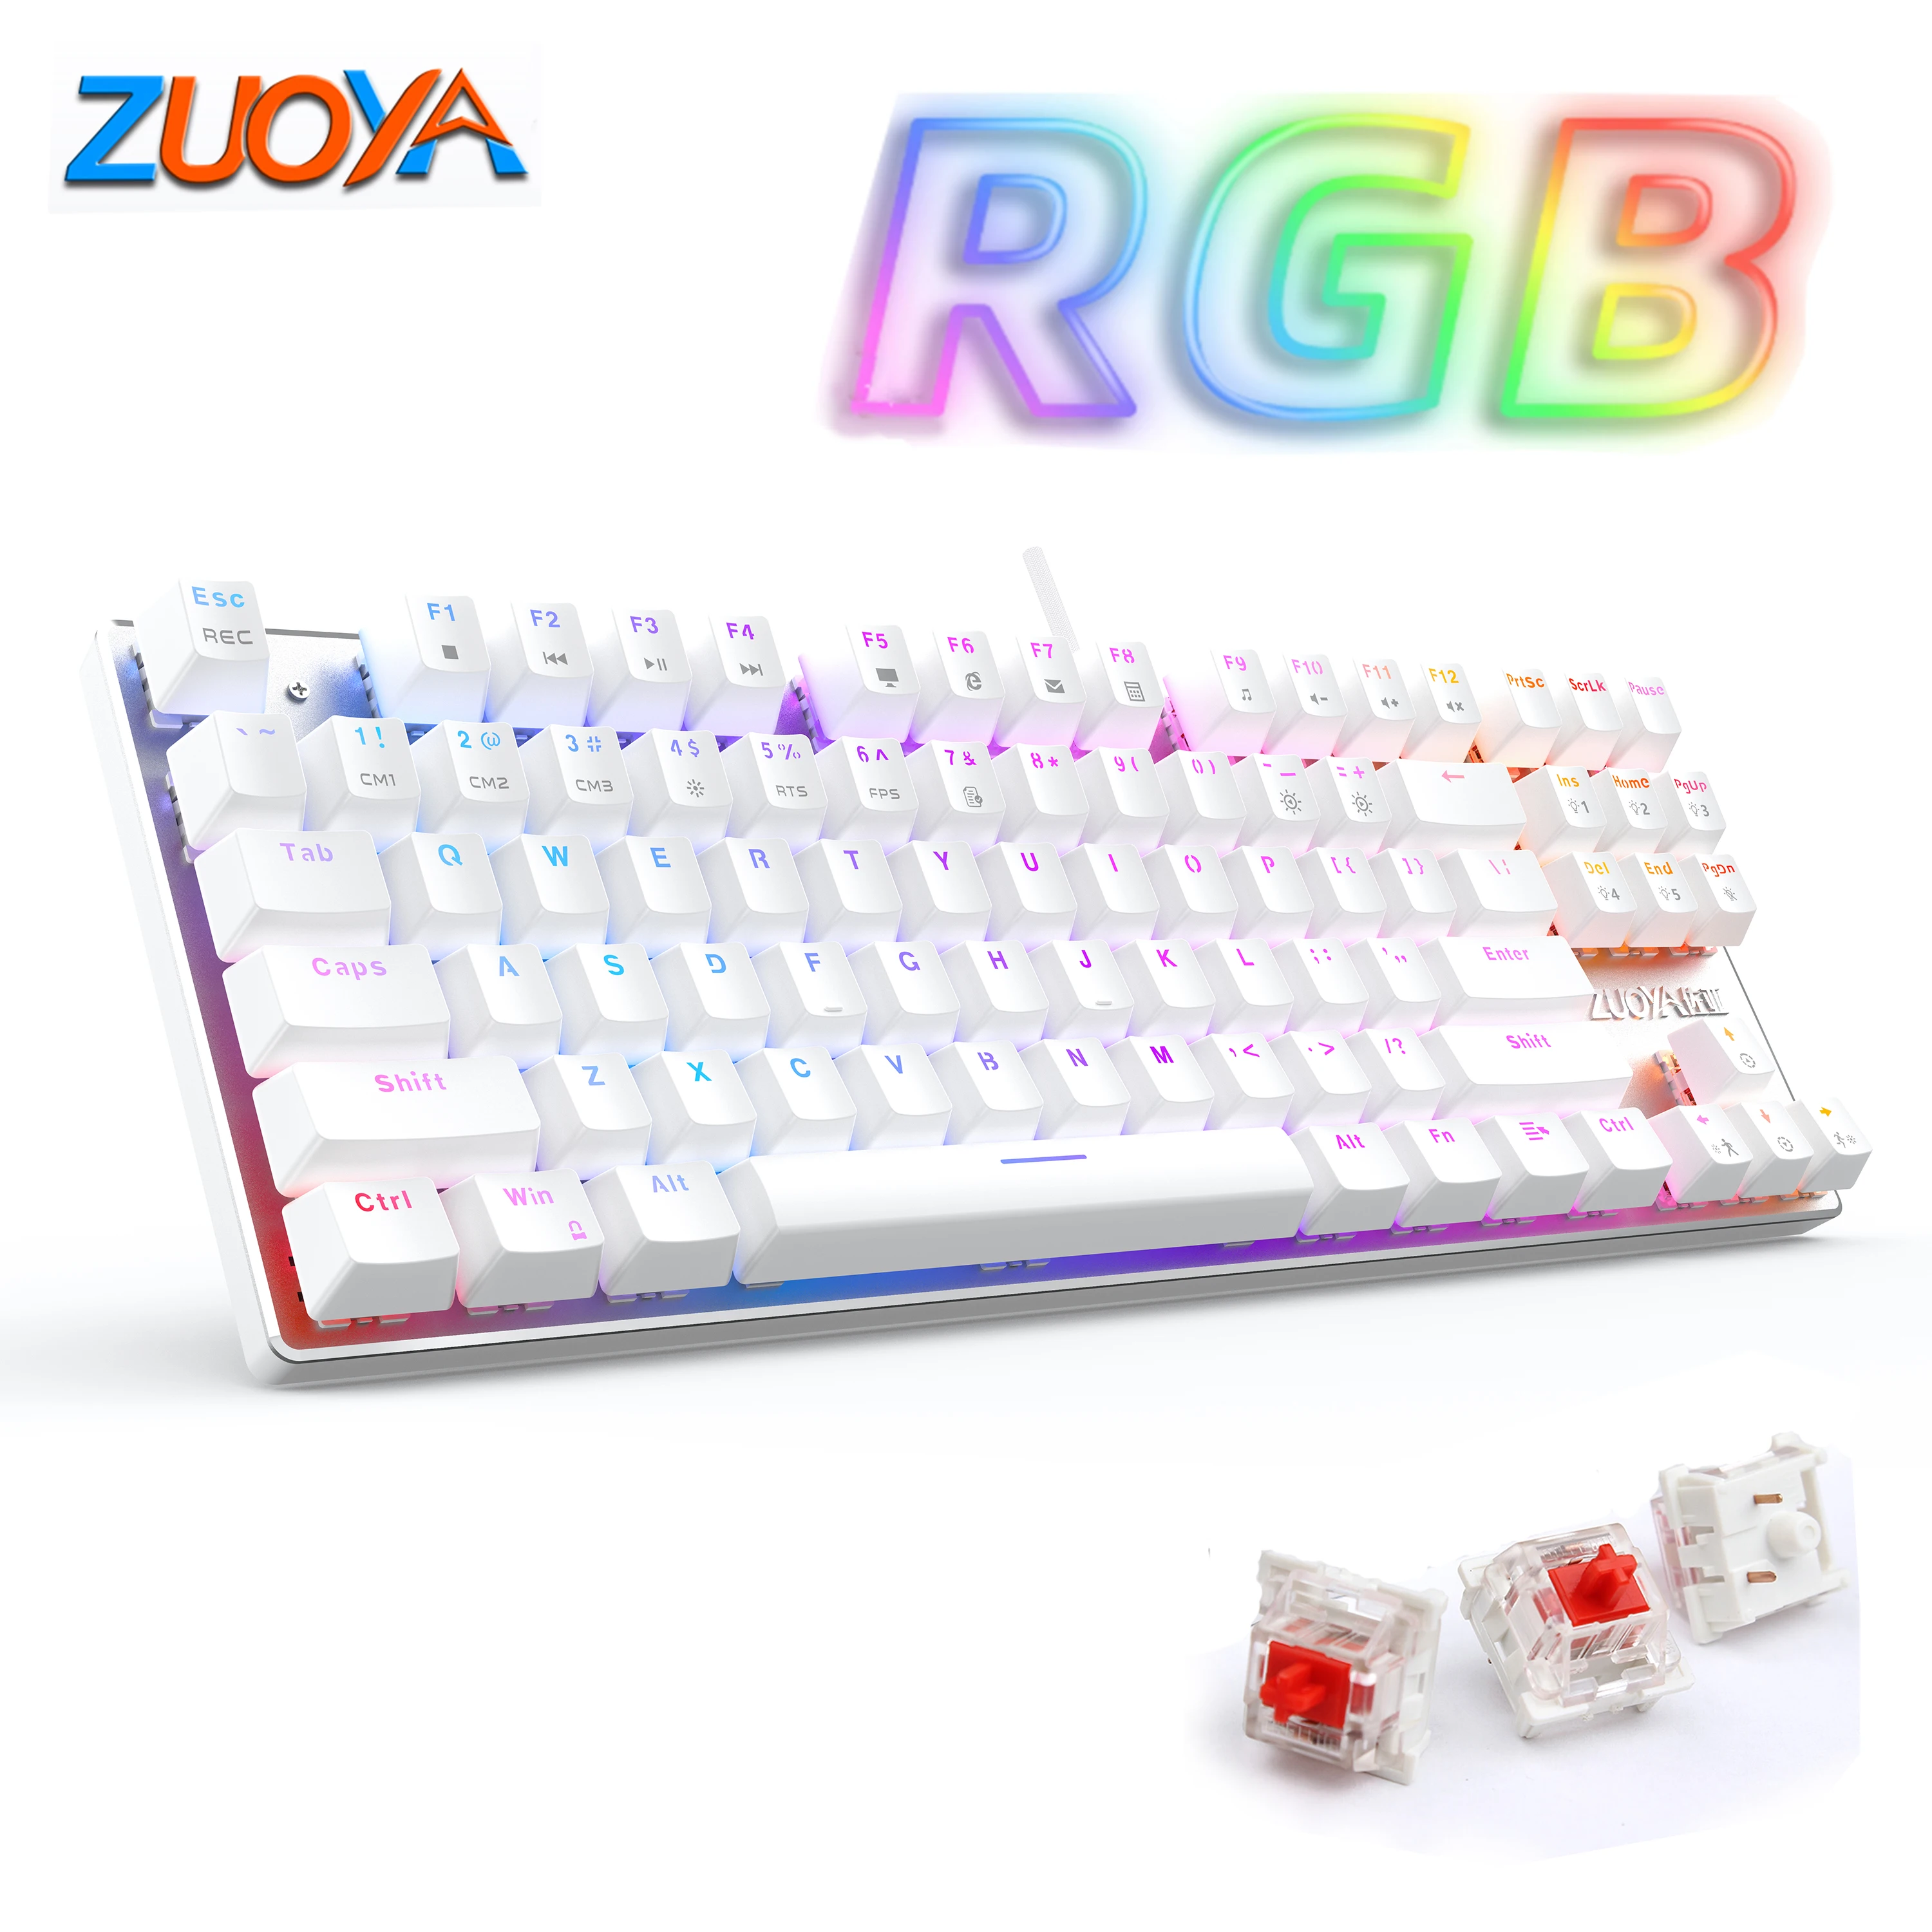 

Игровая механическая клавиатура ZUOYA X76, проводная USB клавиатура, 87 клавиш, RGB подсветка, красный/синий переключатель, для любителей компьютер...